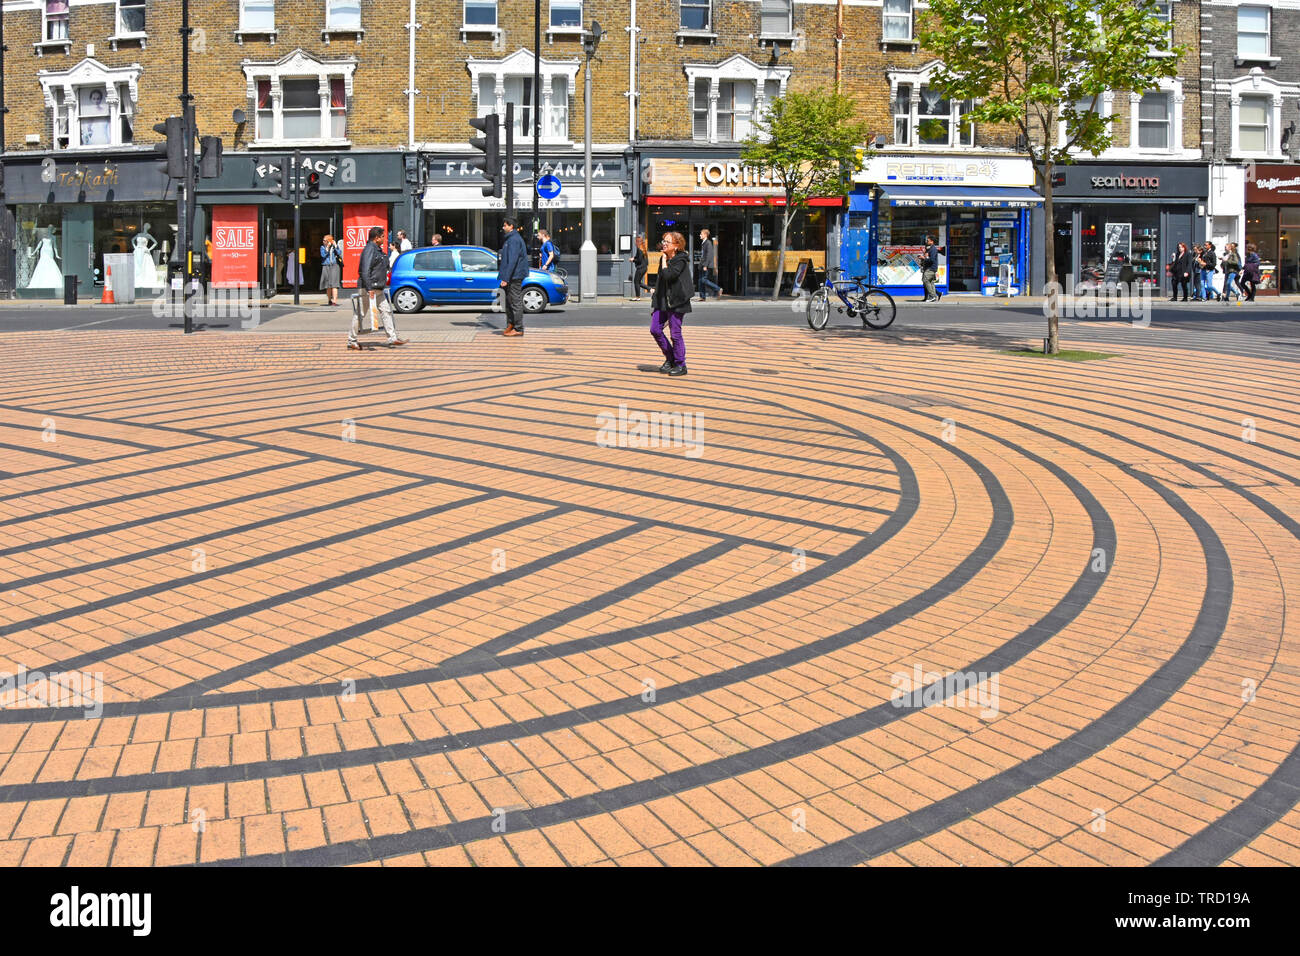 Wimbledon London Menschen in Shopping street scene Pflastersteine auf Kreise und Rechtecke in geometrische Form Muster mit farbigen Streifen England UK festgelegt Stockfoto